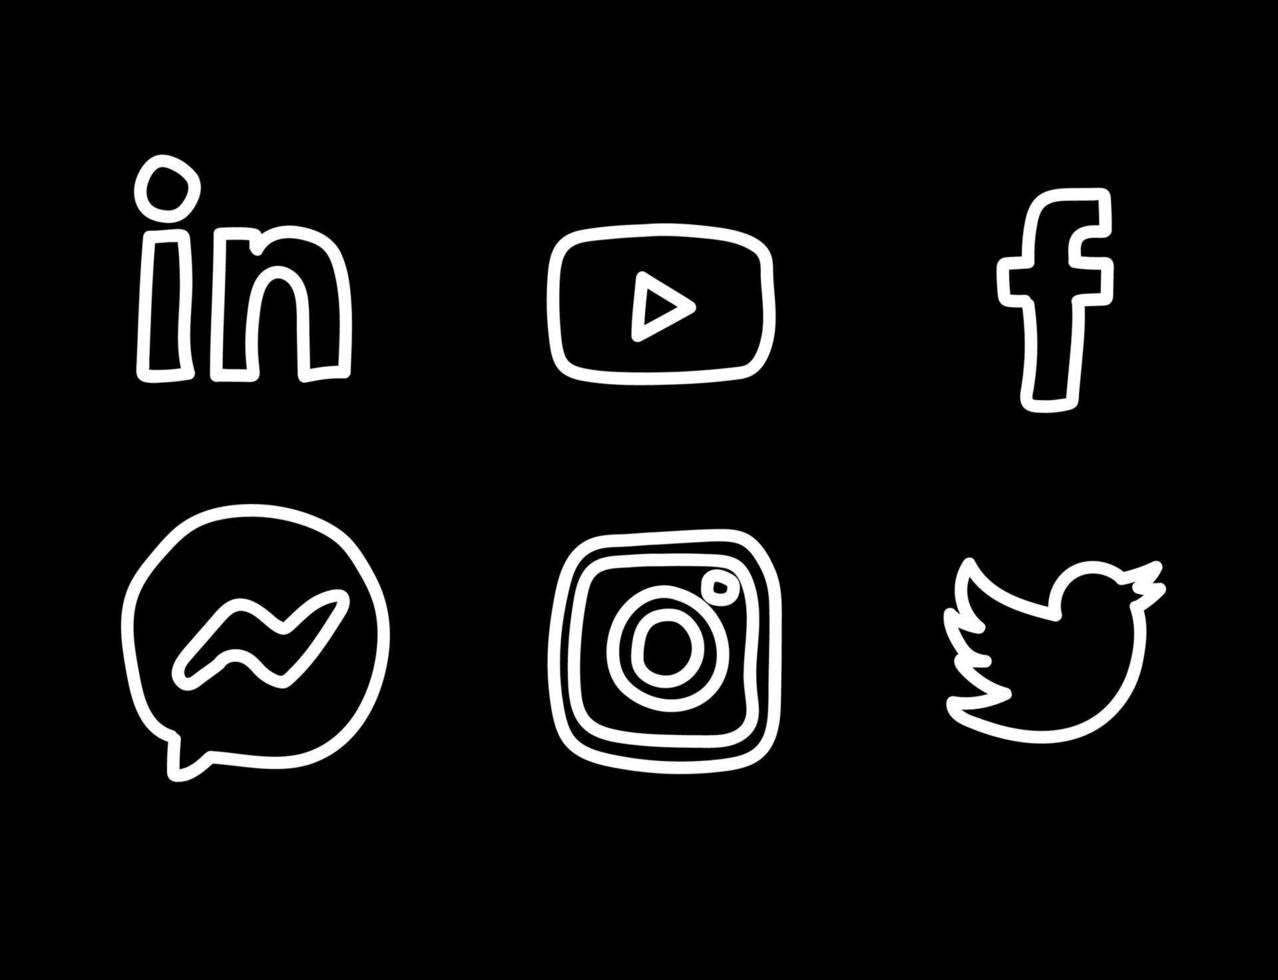 Hand drawn social media logos vector